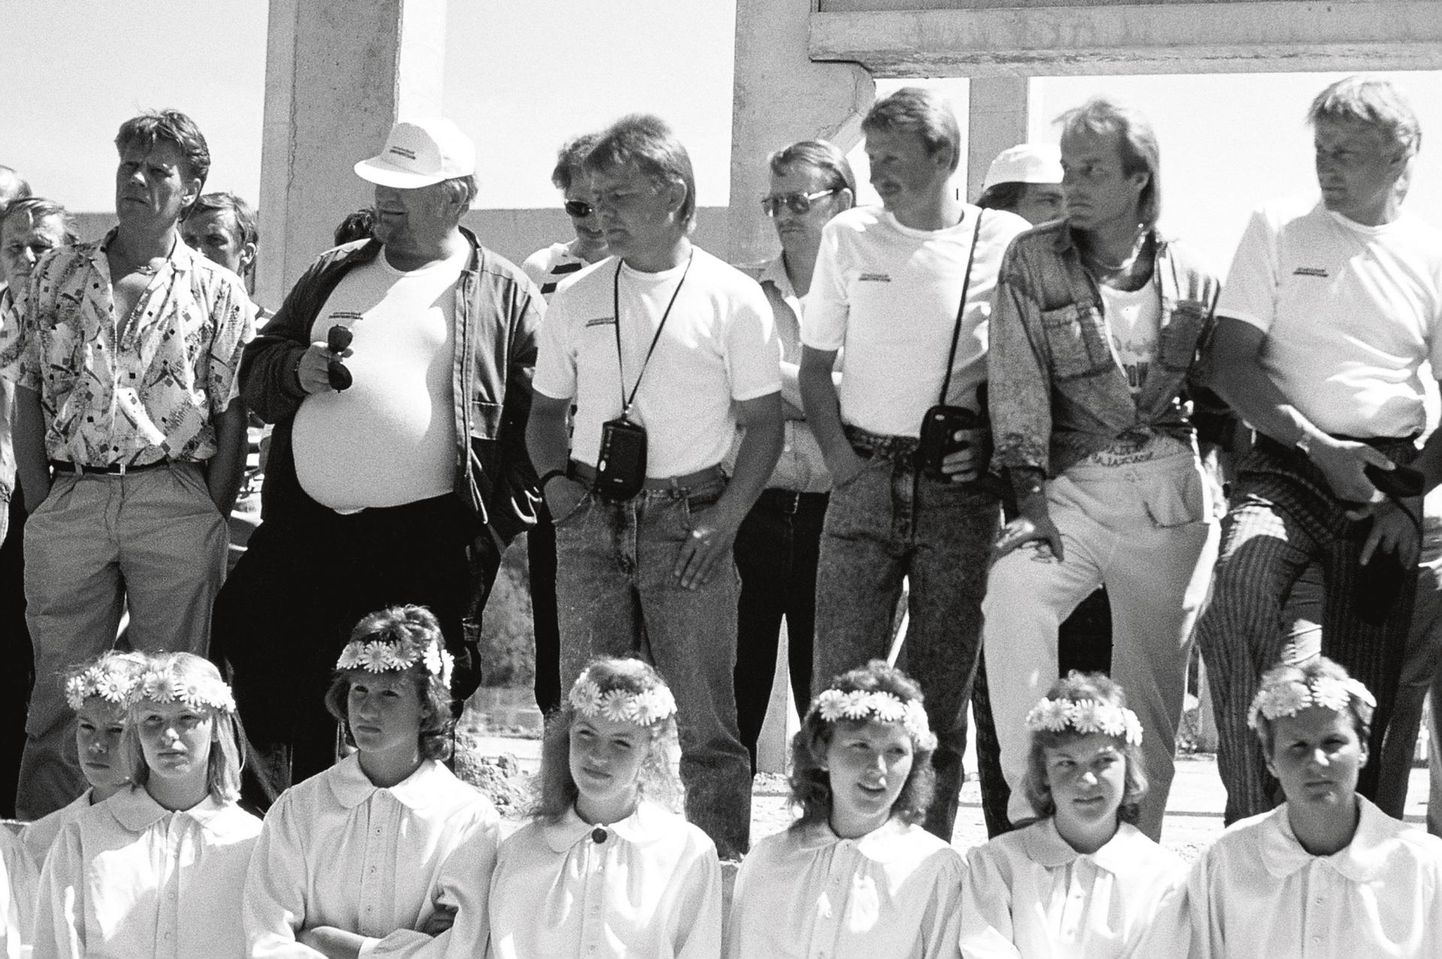 Soome ehitajad ja Eesti neiud Rakvere lihakombinaadi nurgakivitseremoonial 1988. aasta suvel.